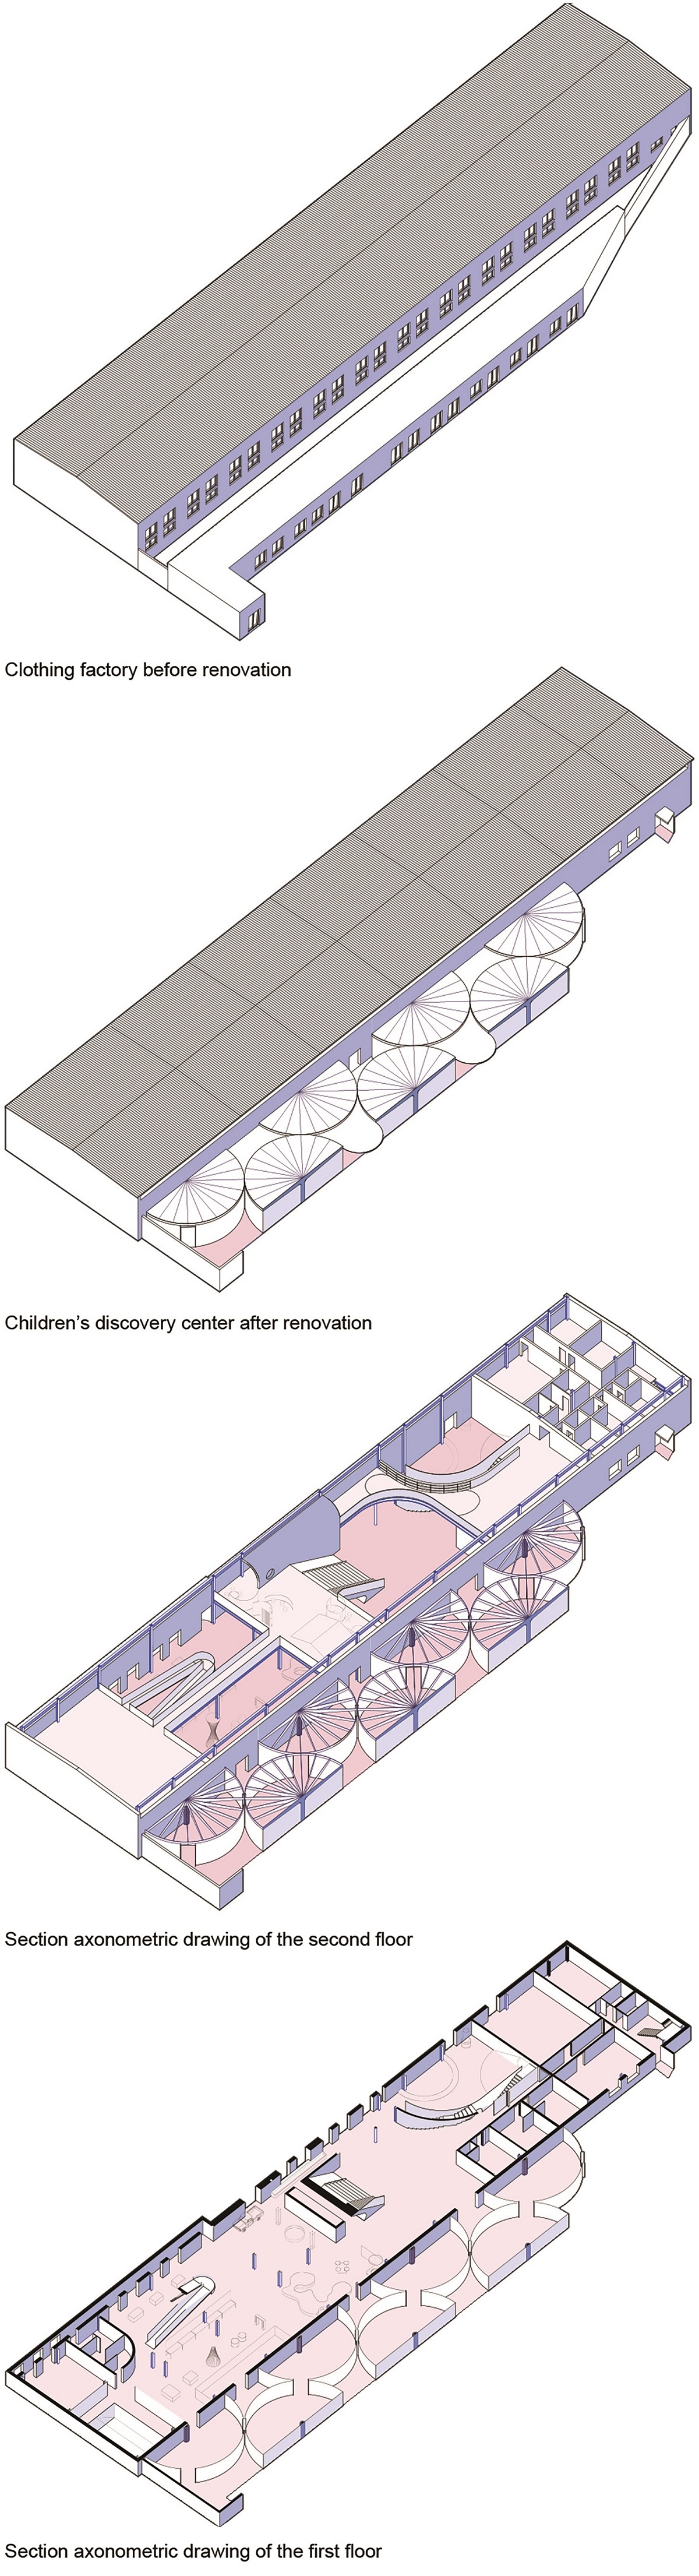 26儿童科技馆改造前后对比分析图@REDe Architects+末广建筑.jpg